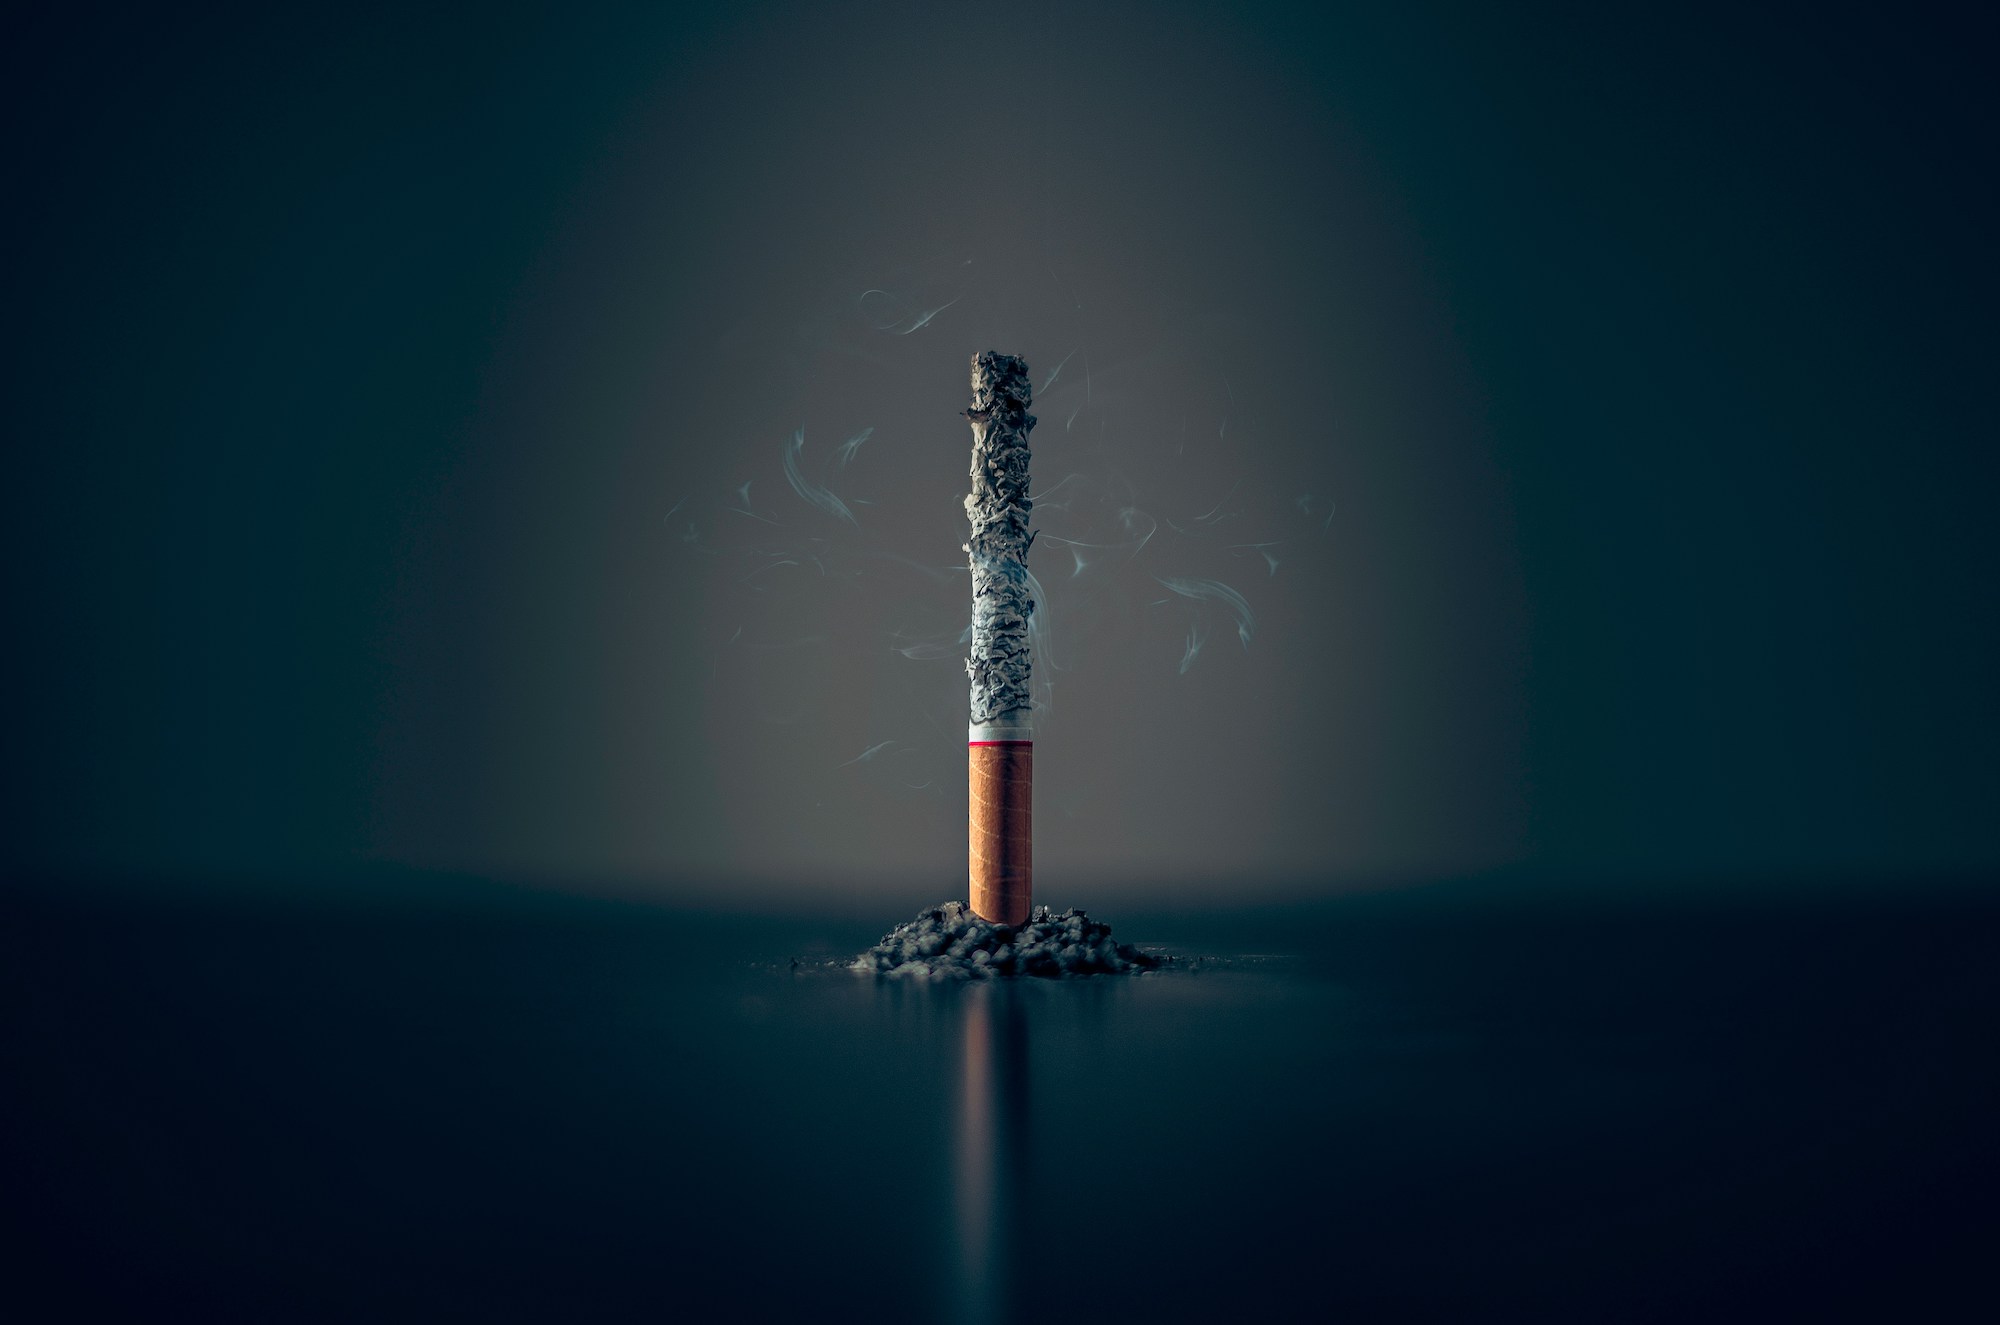 Popredný výrobca IQOS čelí regulačným výzvam: Je bezdymové fajčenie naozaj zdravšie?